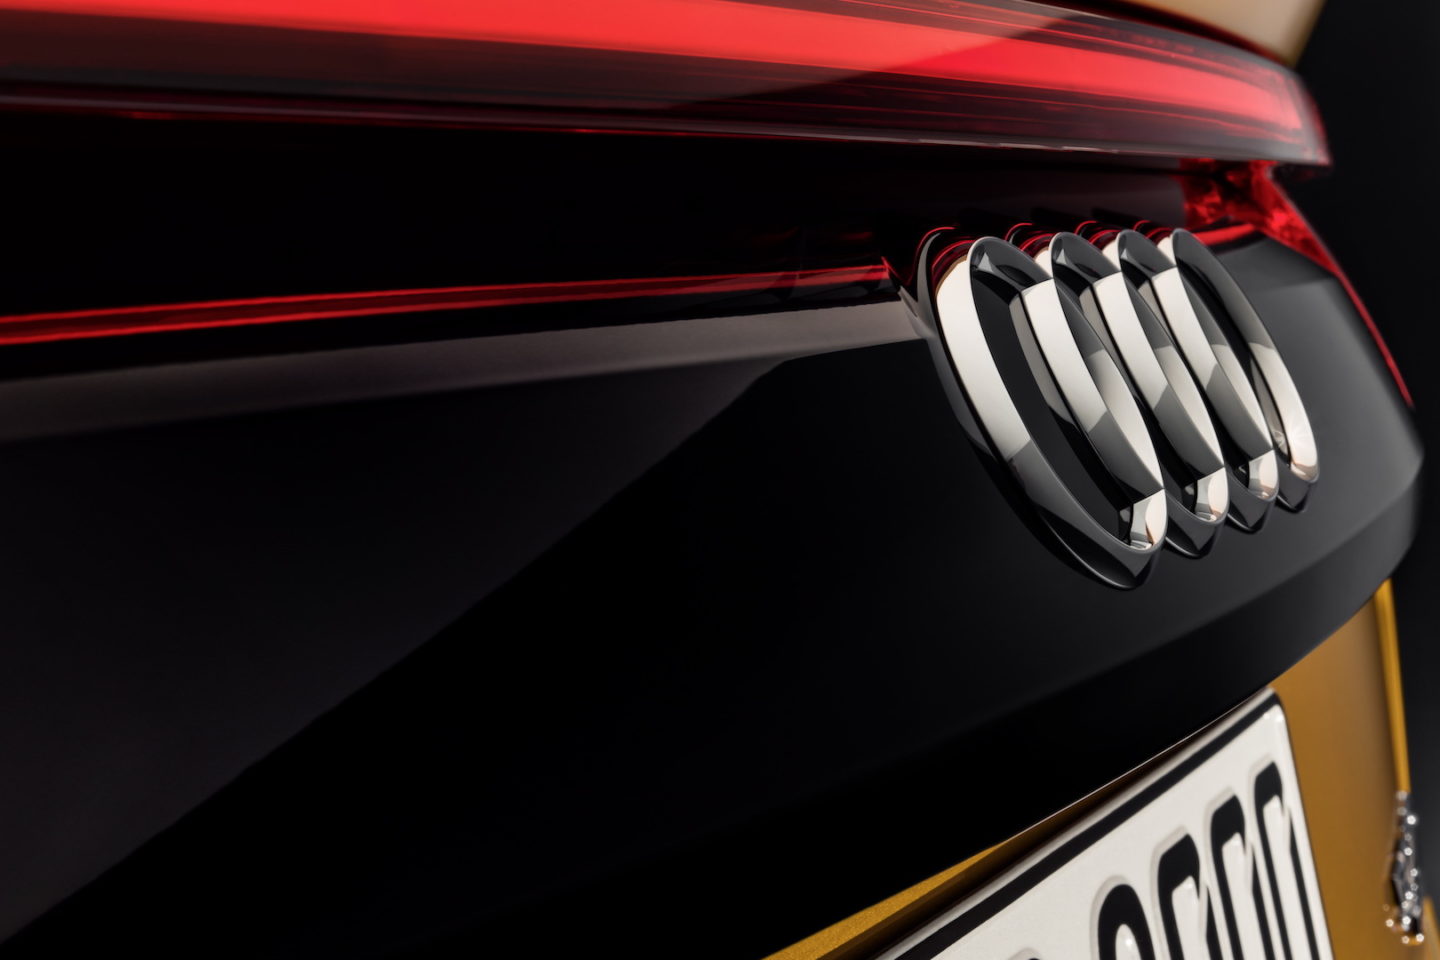 Audi Q8 Lançamento 2018